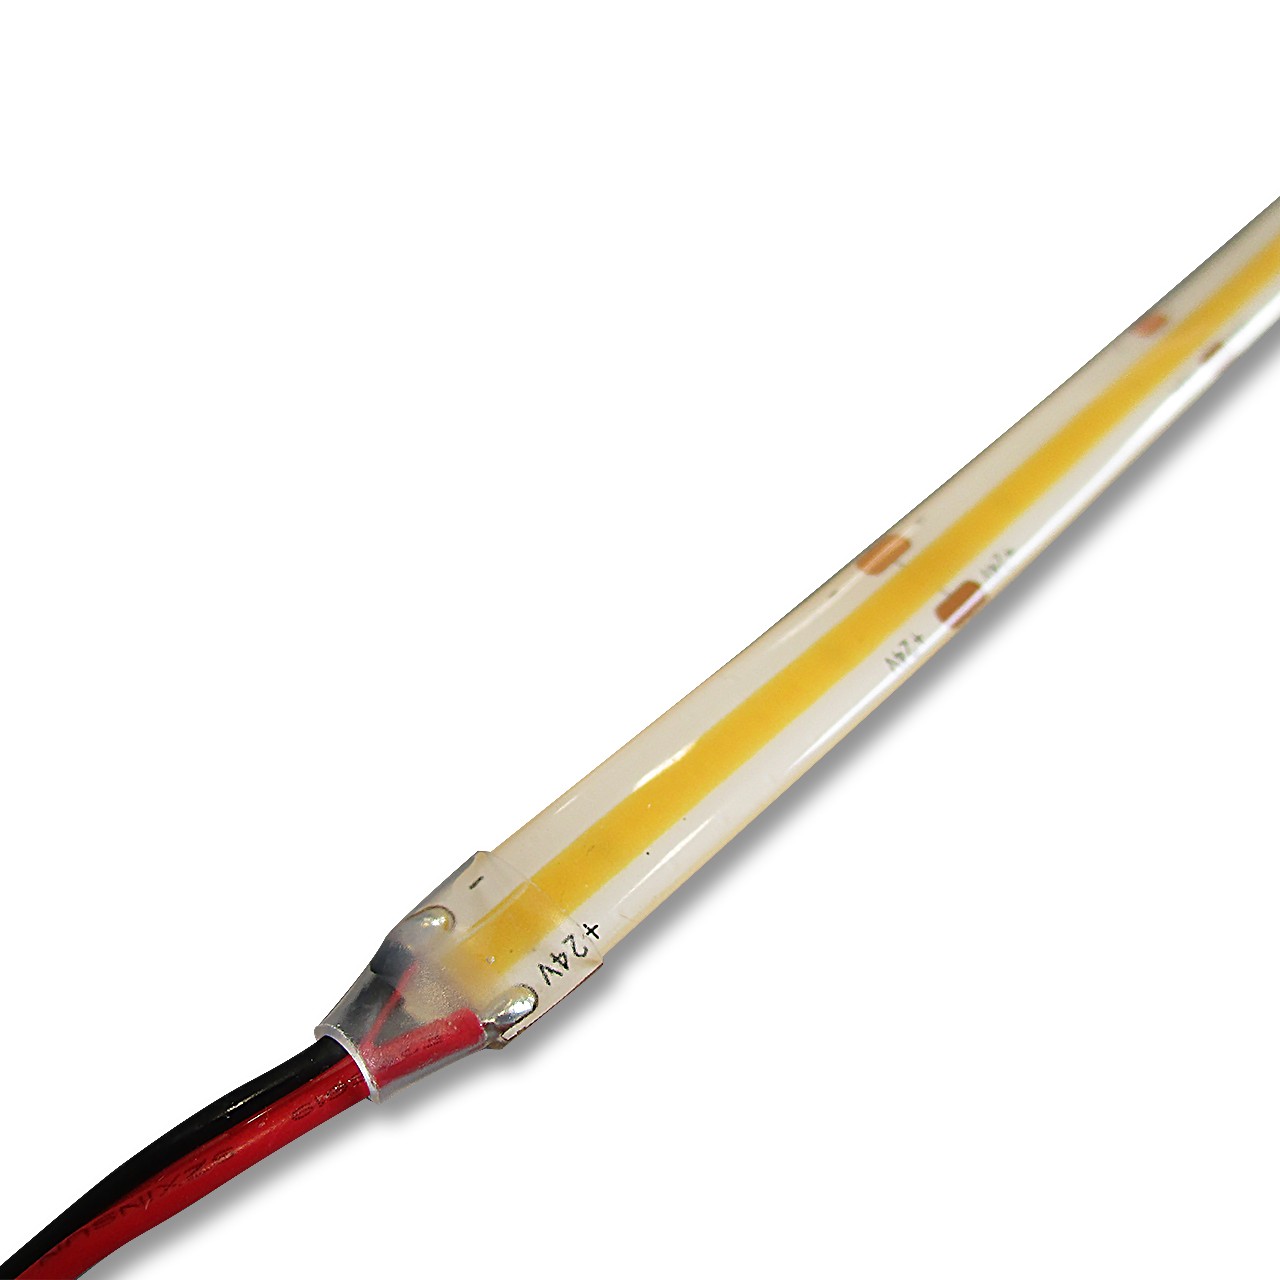 Connecteur pour bande LED avec câble 1 couleur pour bande LED COB 10mm 24v  